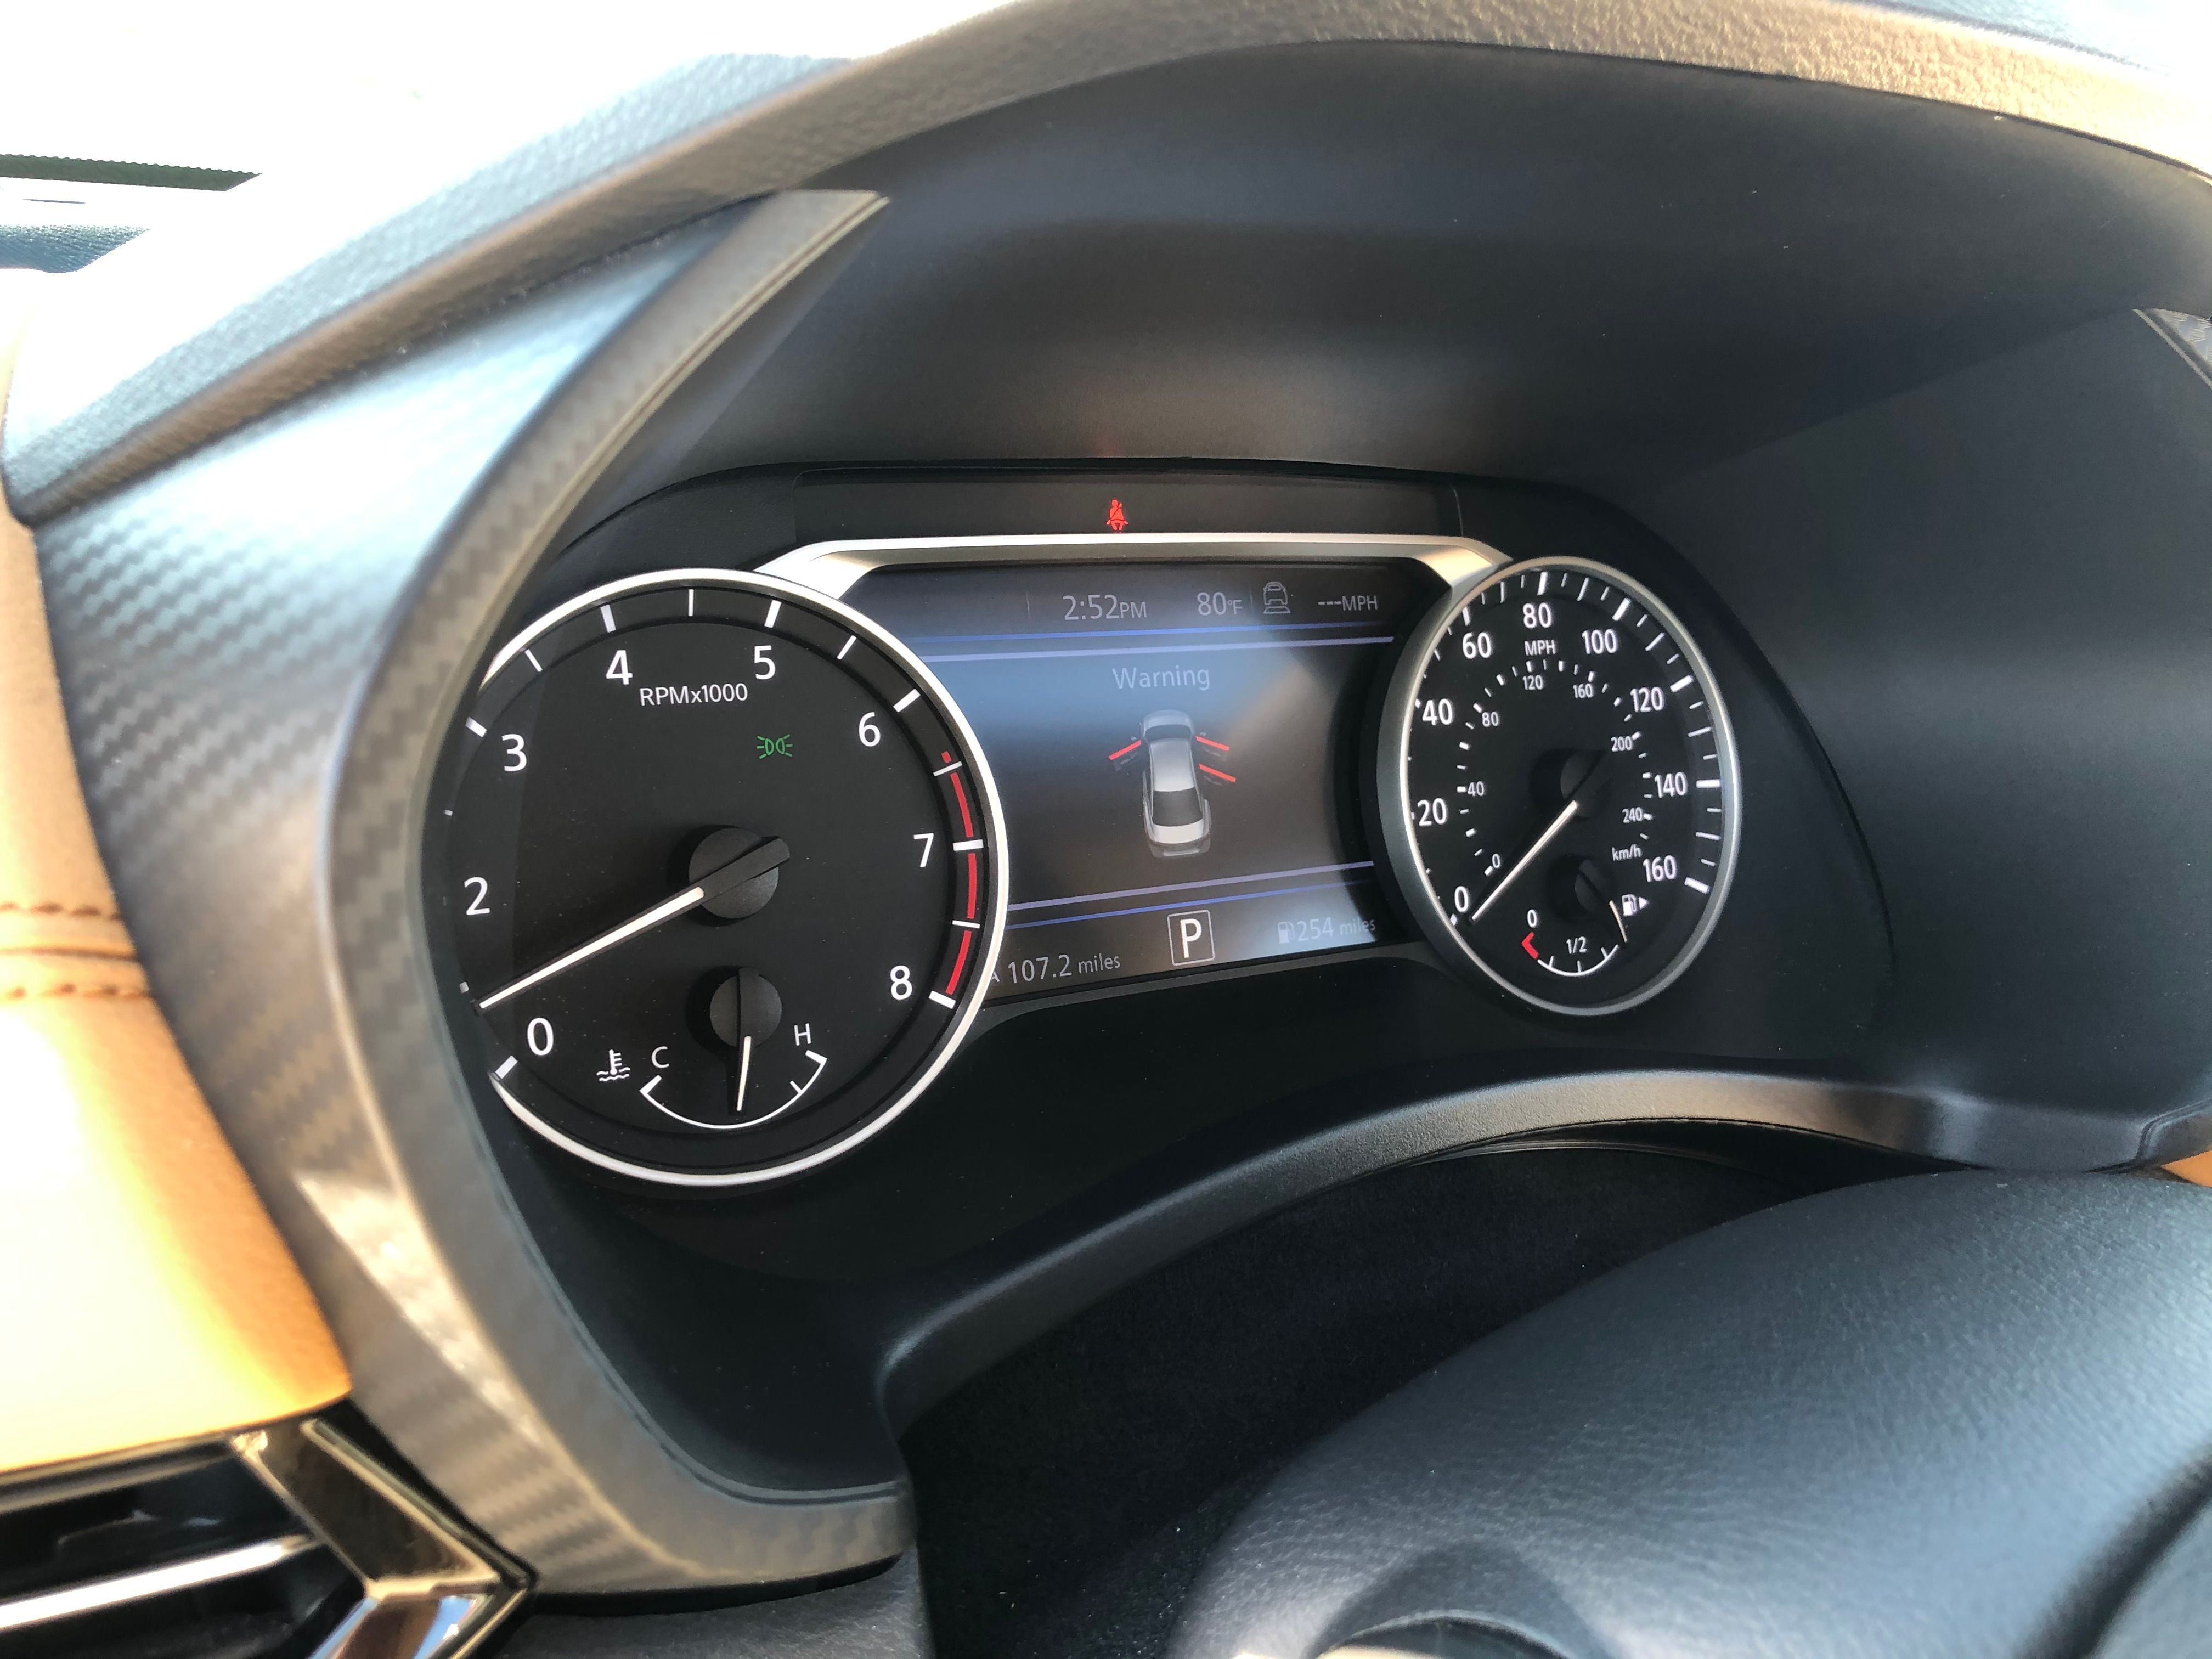 2020 Nissan Sentra - Driven